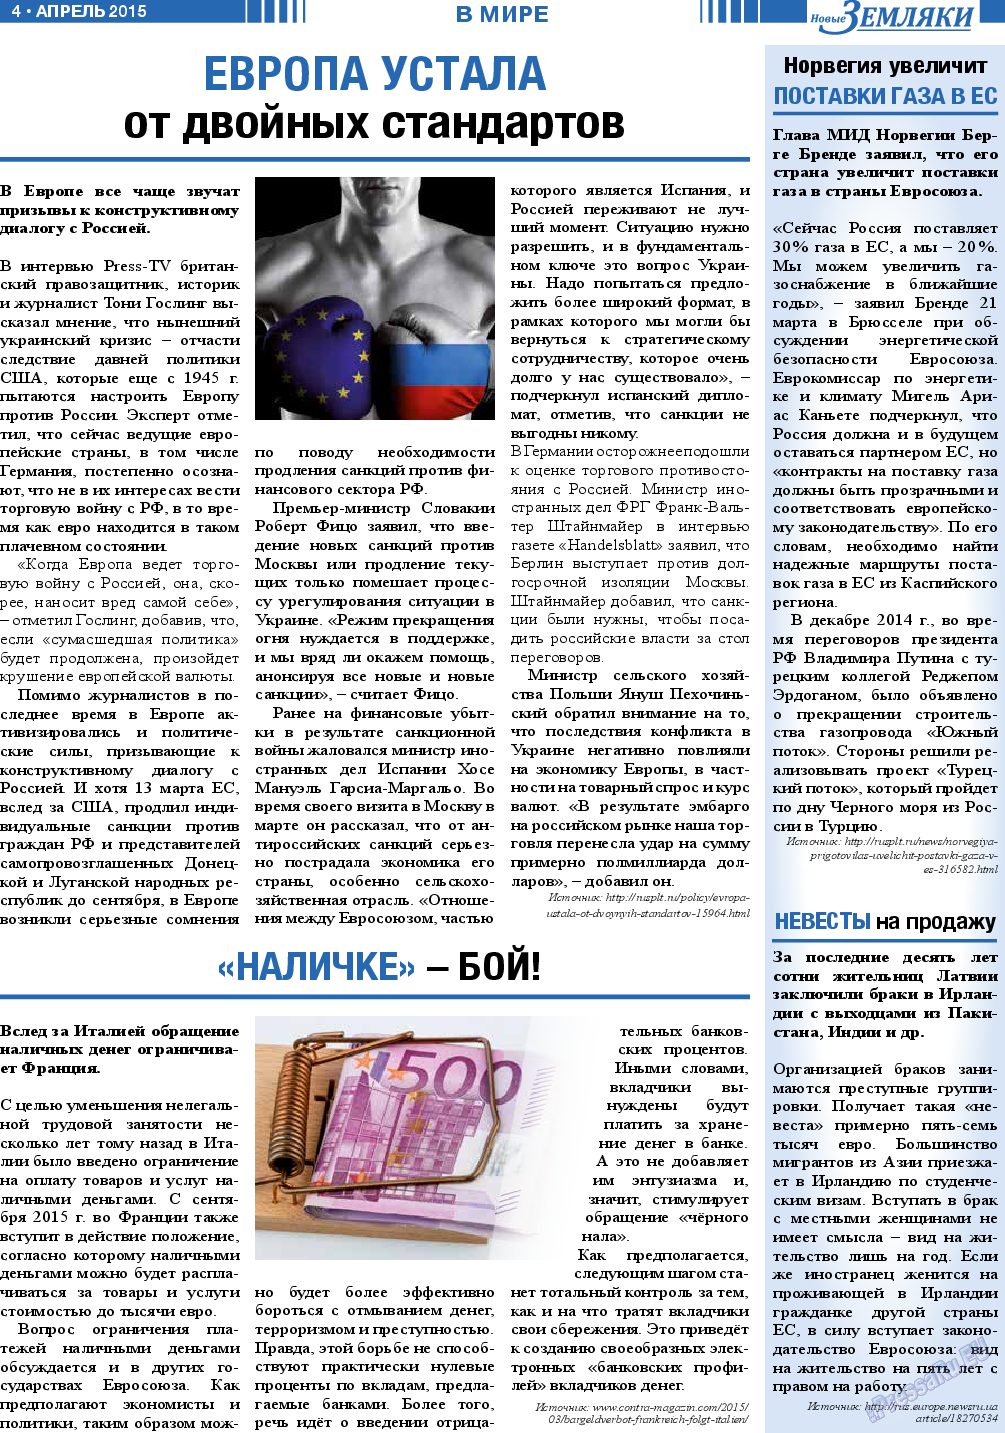 Новые Земляки, газета. 2015 №4 стр.4